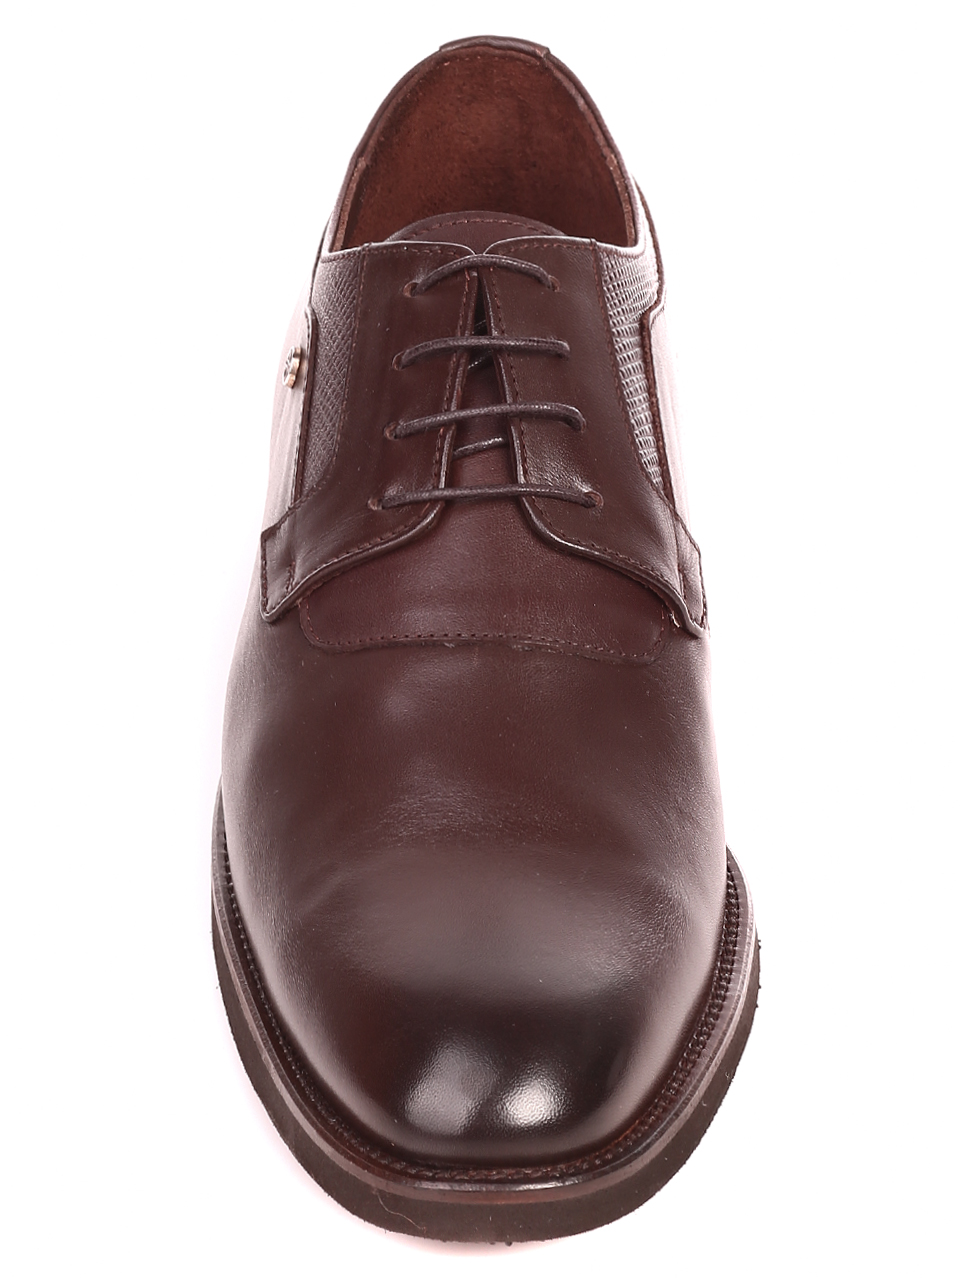 Елегантни мъжки обувки от естествена кожа 7AT-21855 brown